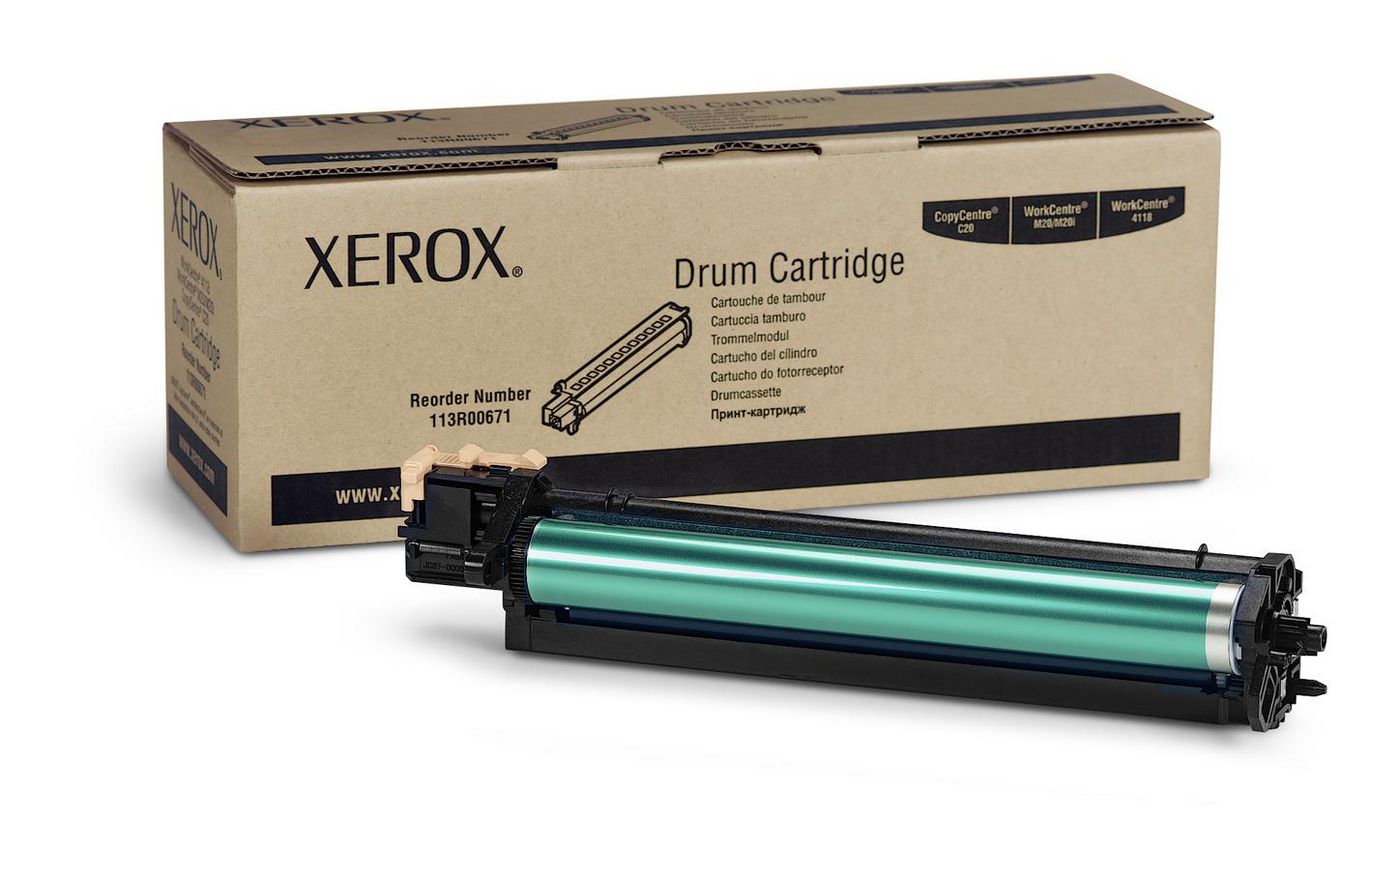 XEROX WorkCentre 4118 Trommel Kit